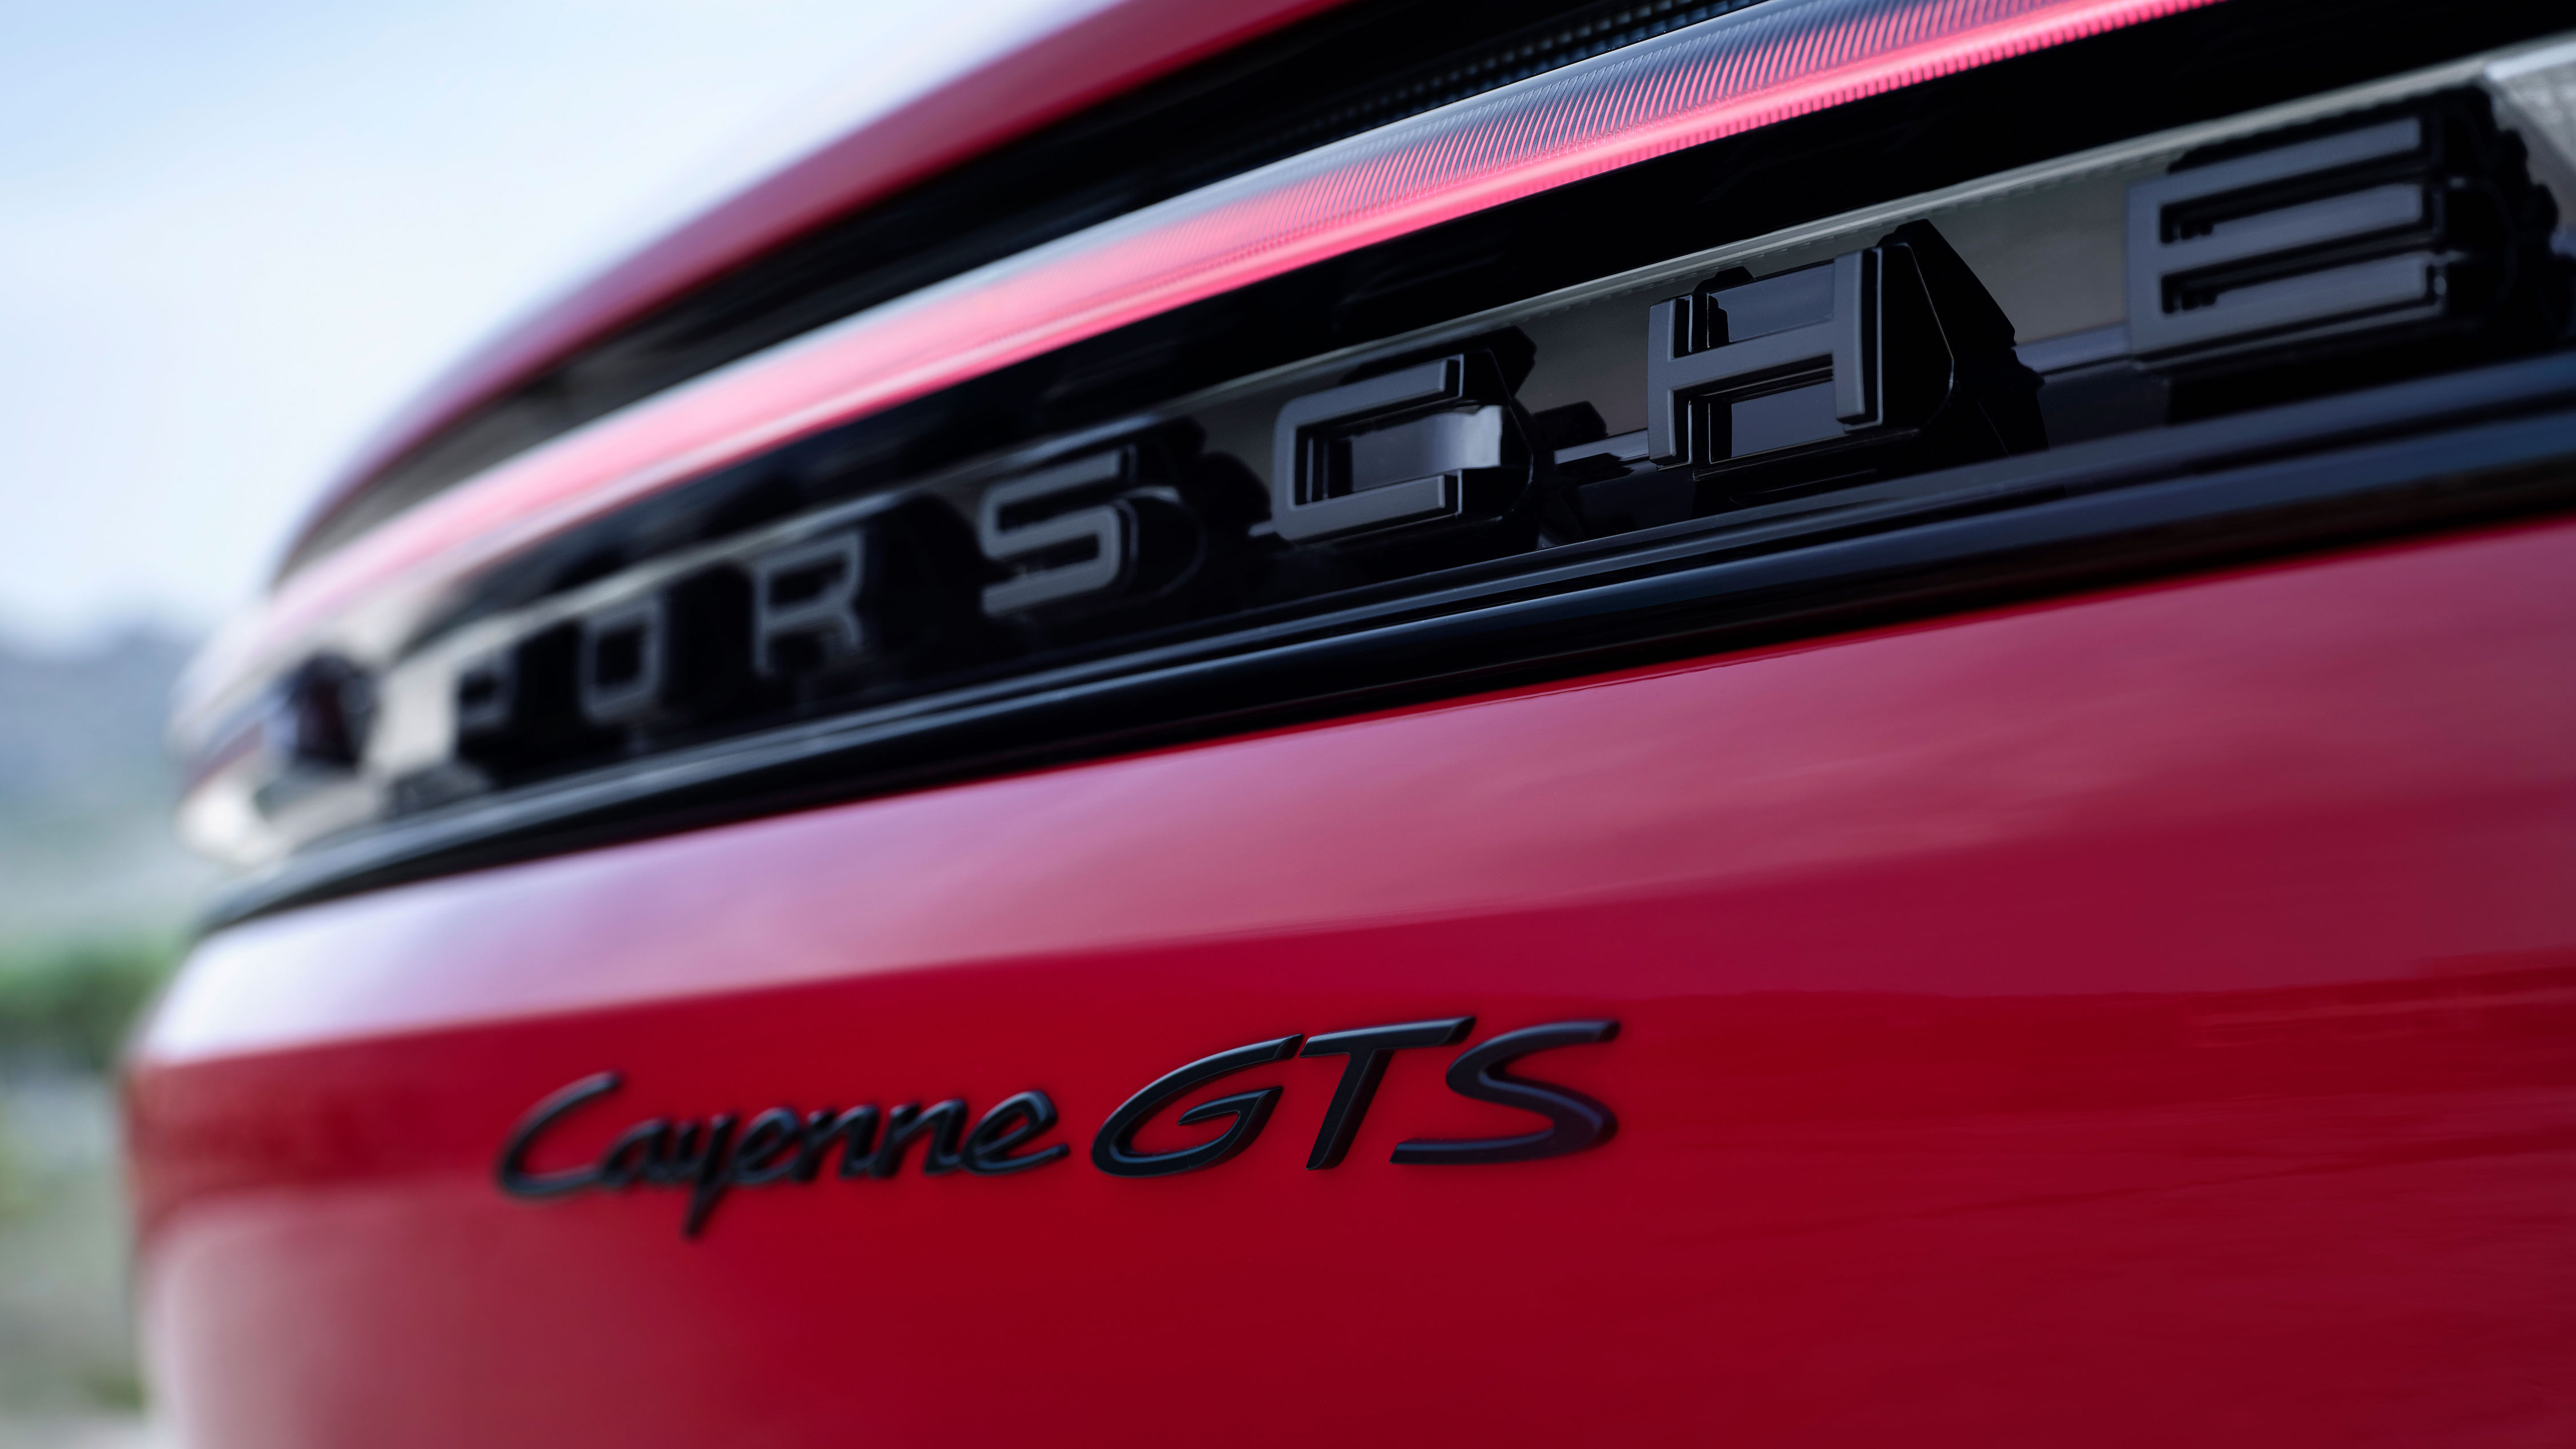  Precise și dinamice, cu motor V8: noile modele Cayenne GTS, comunicat de presă, 22/04/2024, Porsche AG